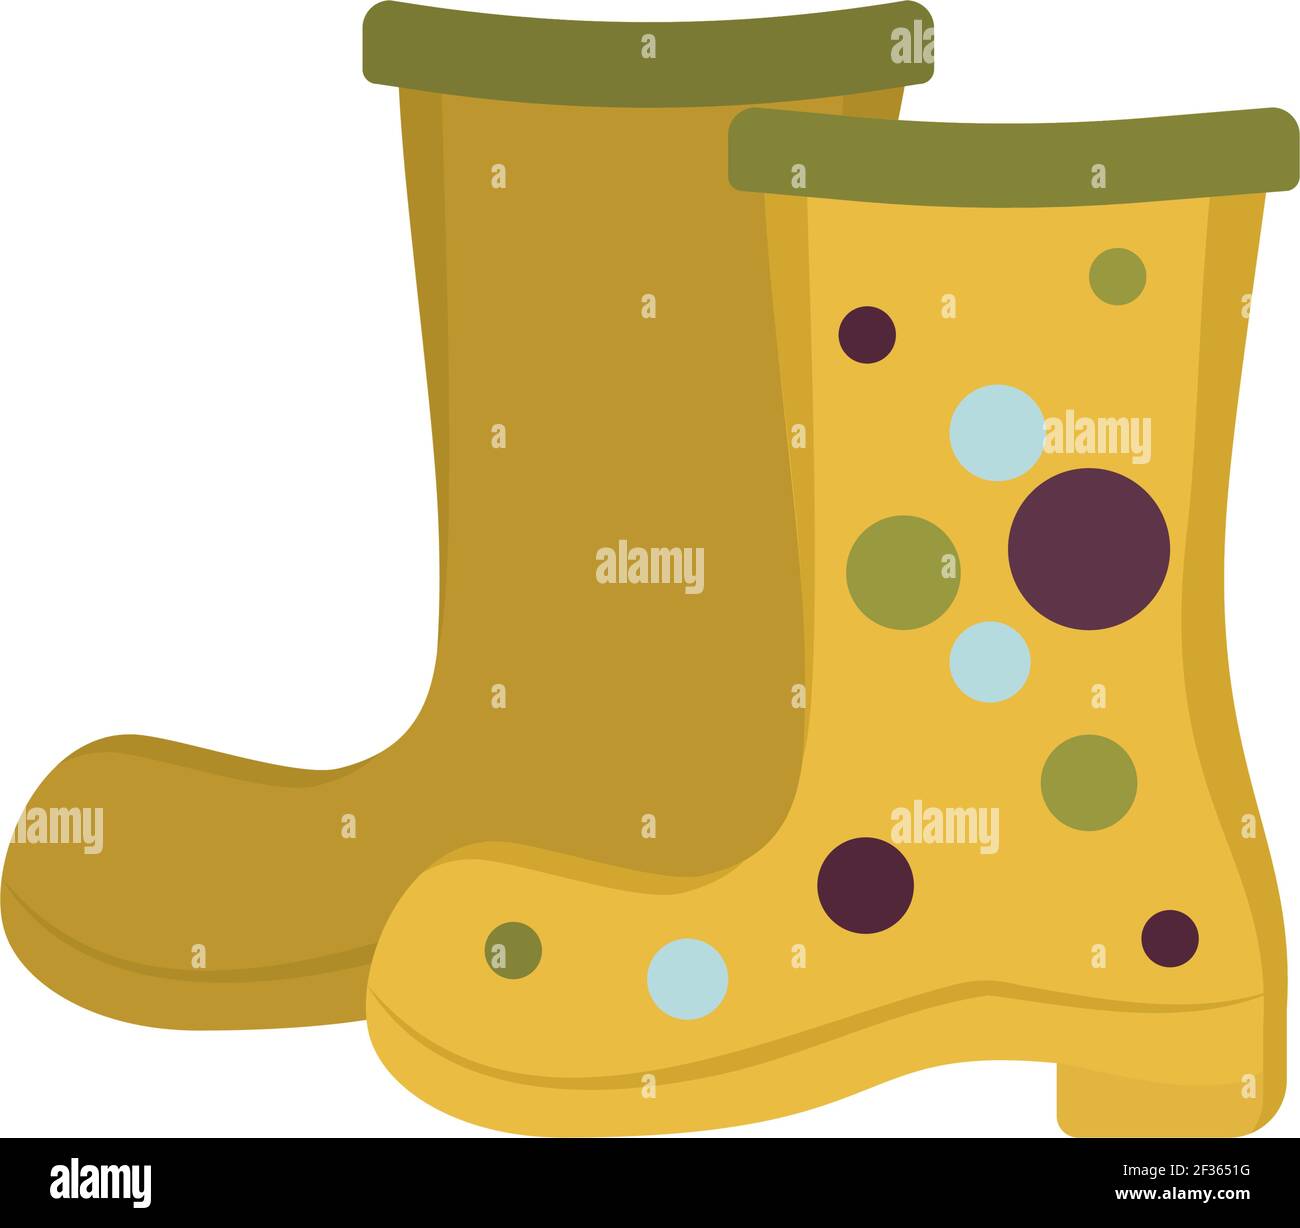 Icône de bottes en caoutchouc jaune Image Vectorielle Stock